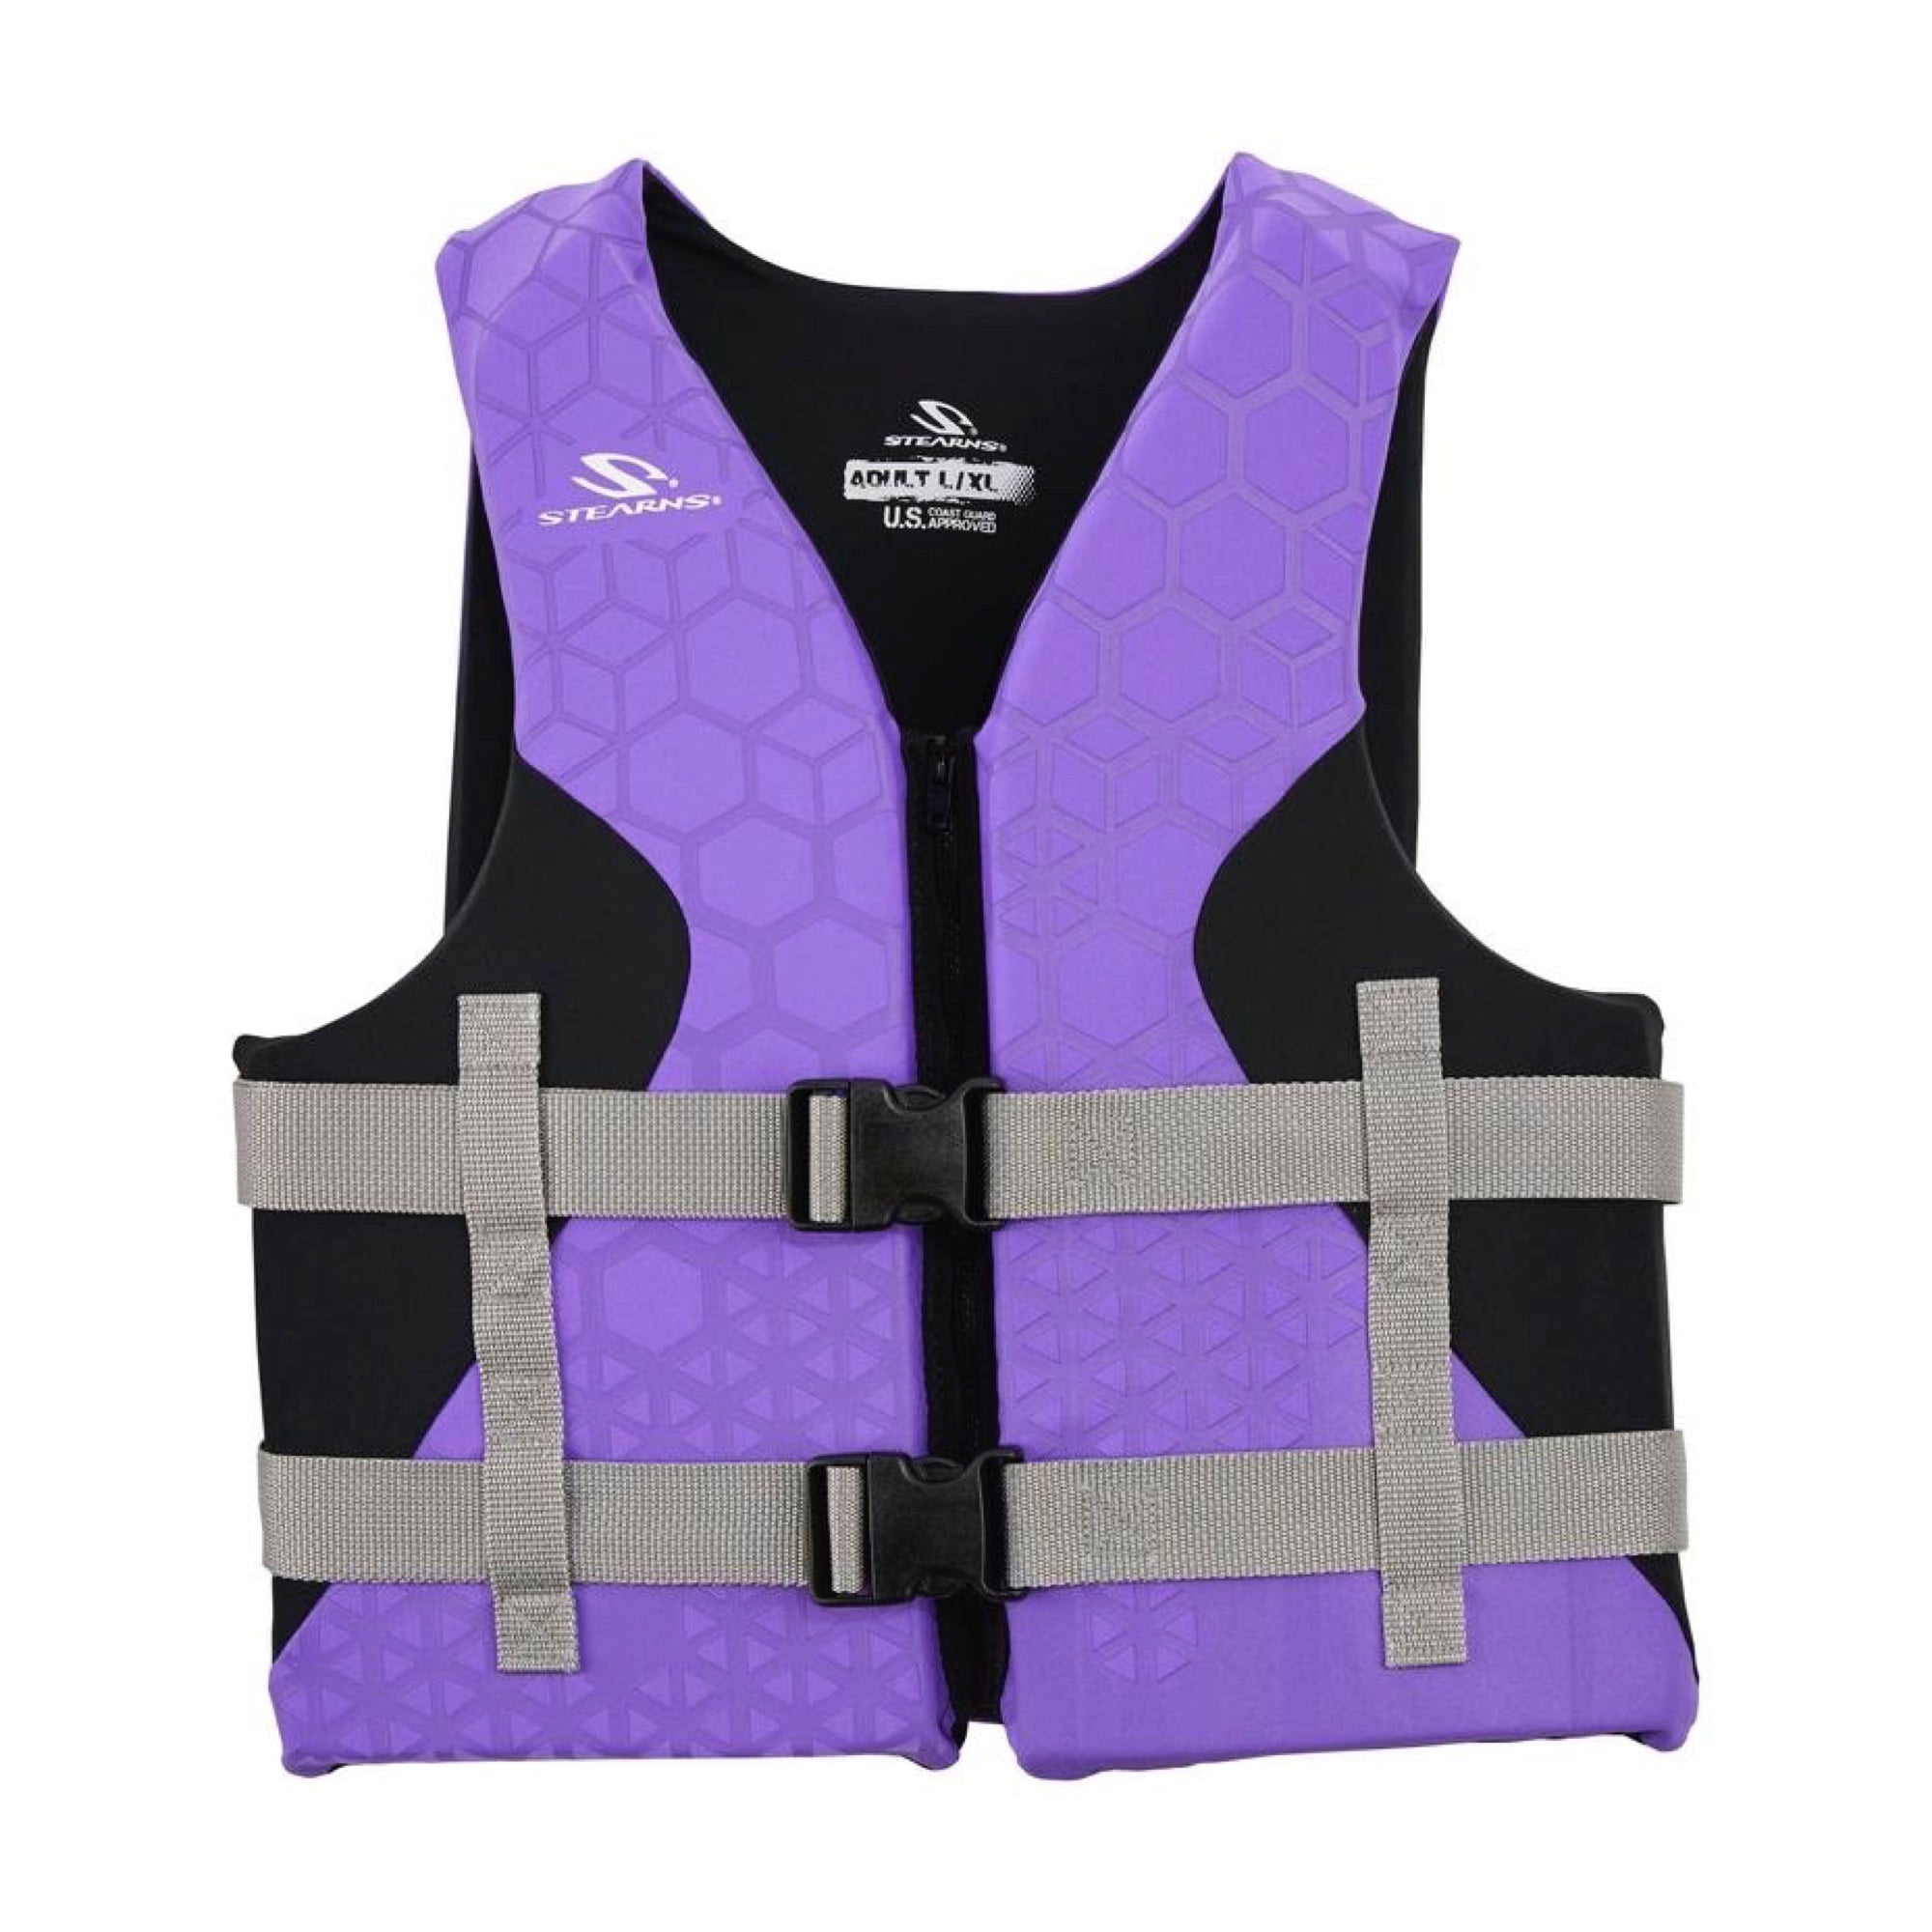 Stearns Women's Adult Hydro Vest Pink/Purple L/XL 2000030918-W 